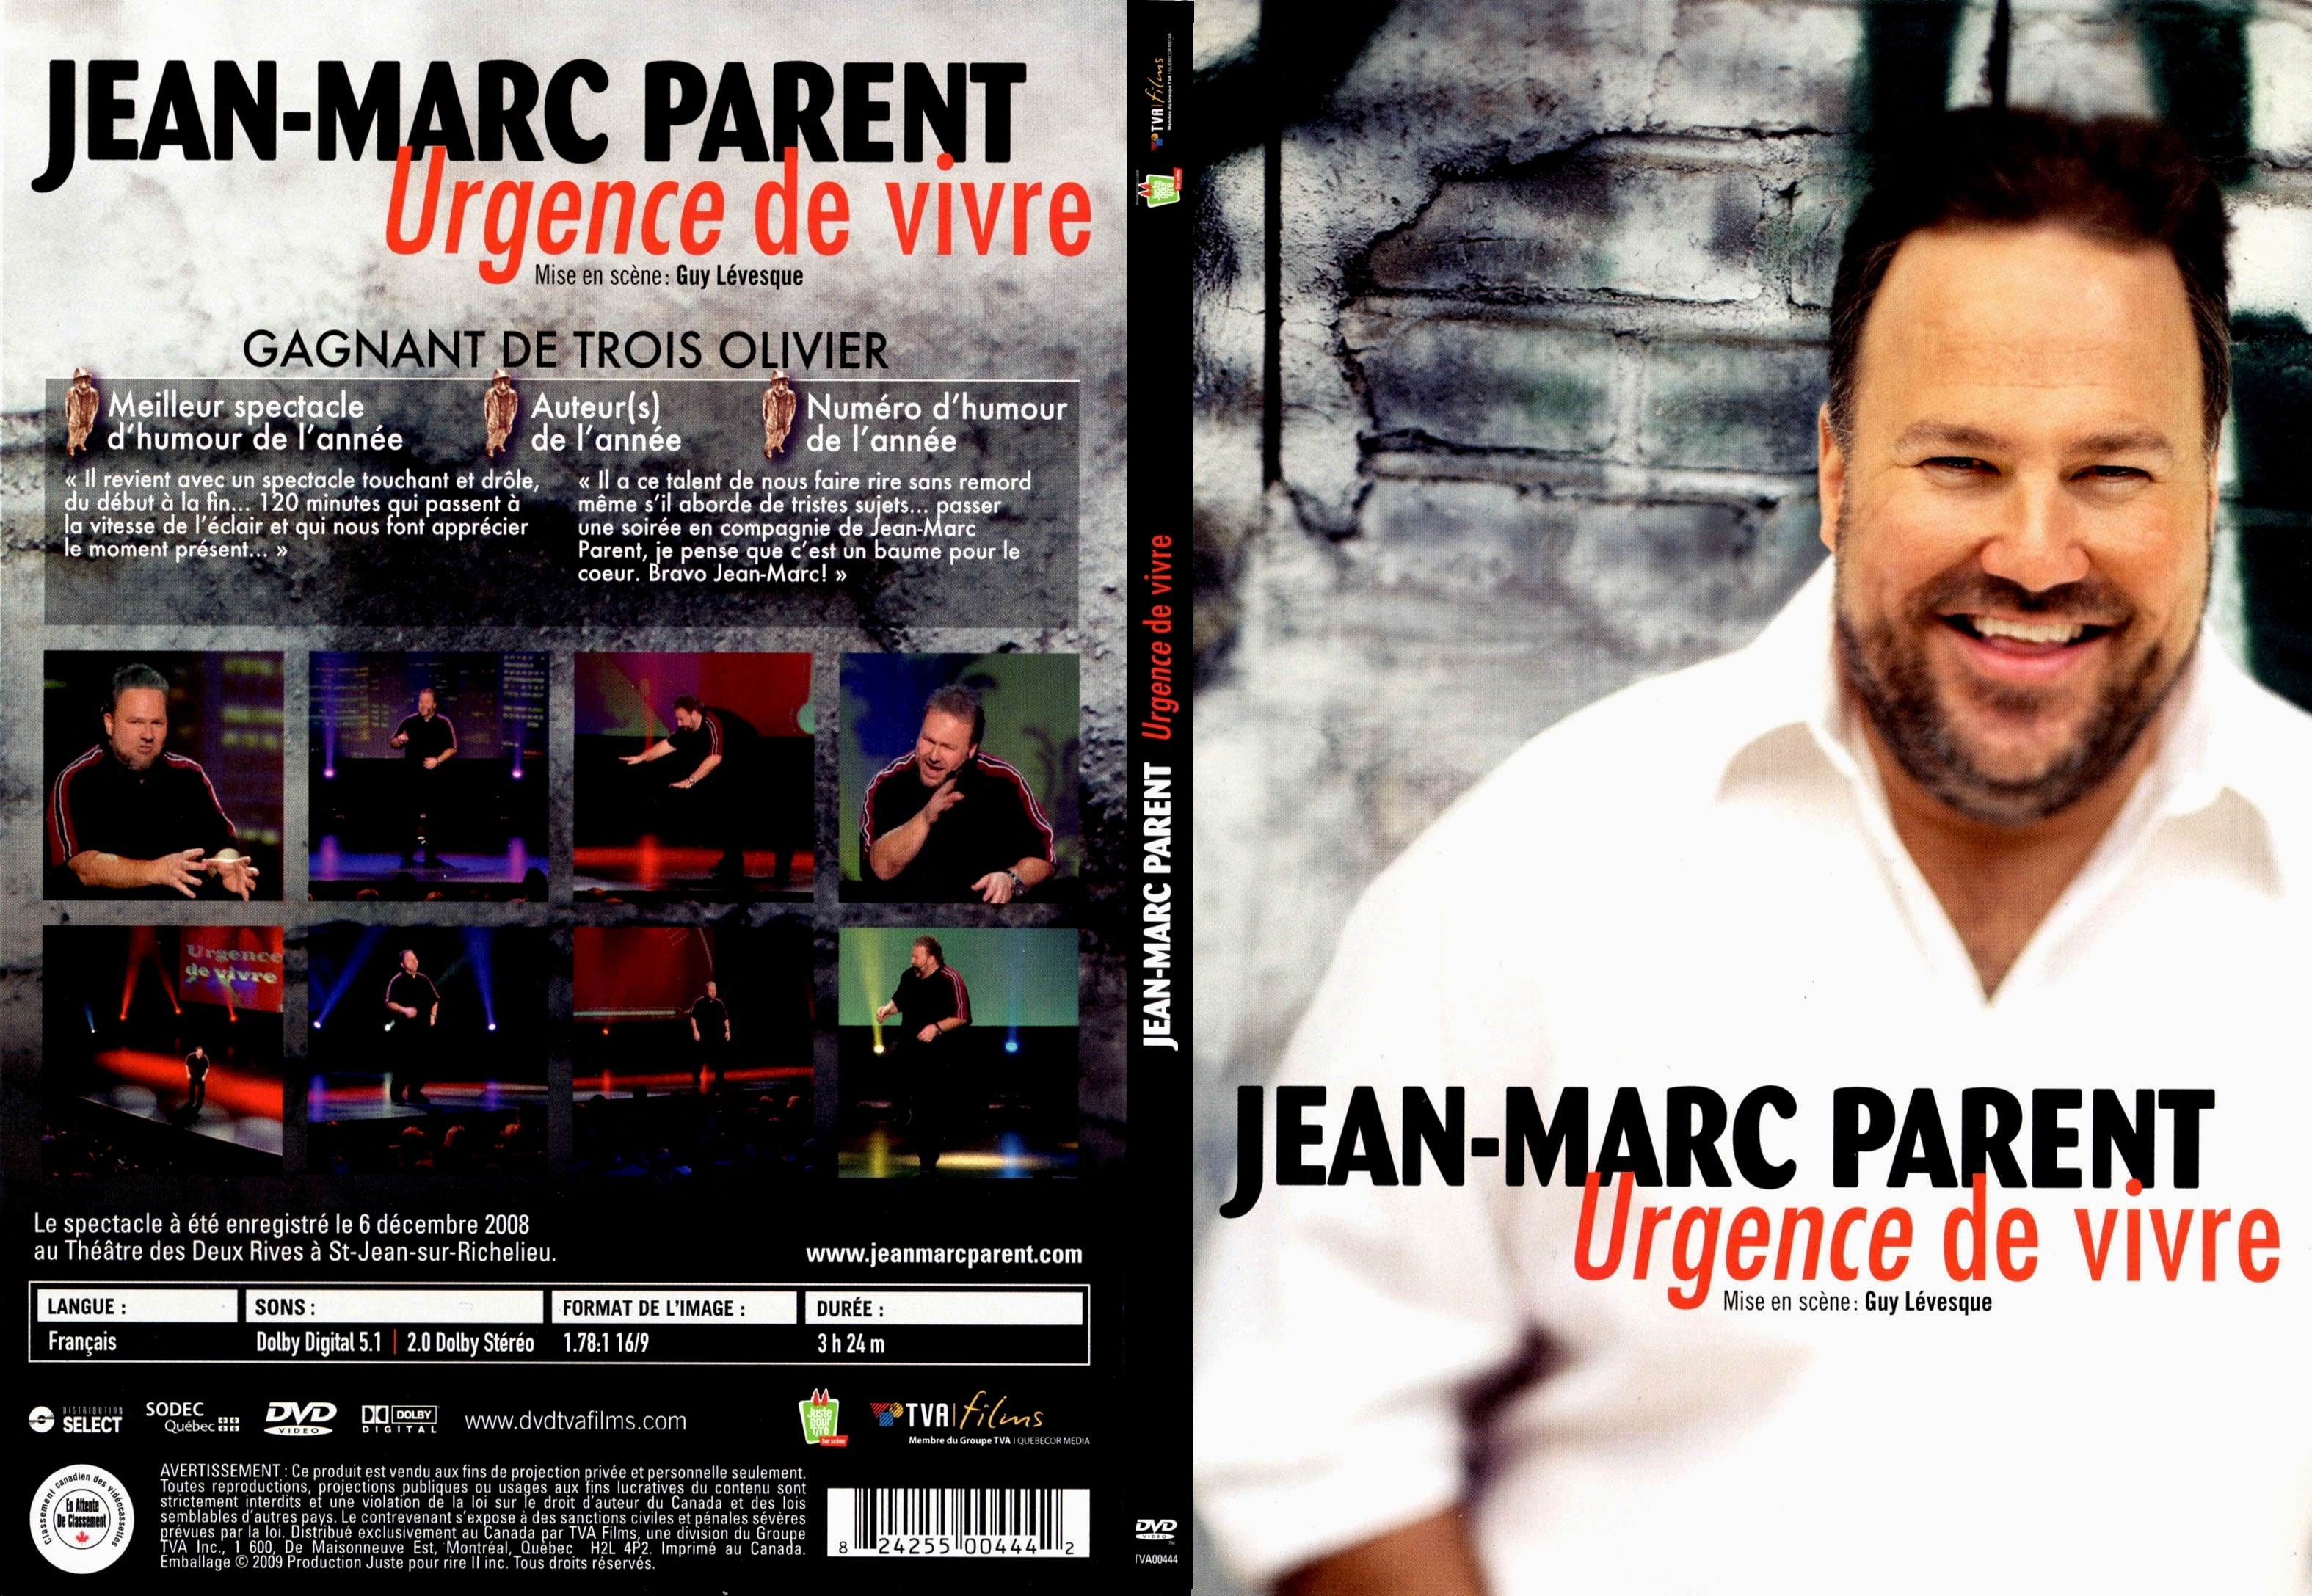 Jaquette DVD Jean-Marc Parent urgence de vivre - SLIM